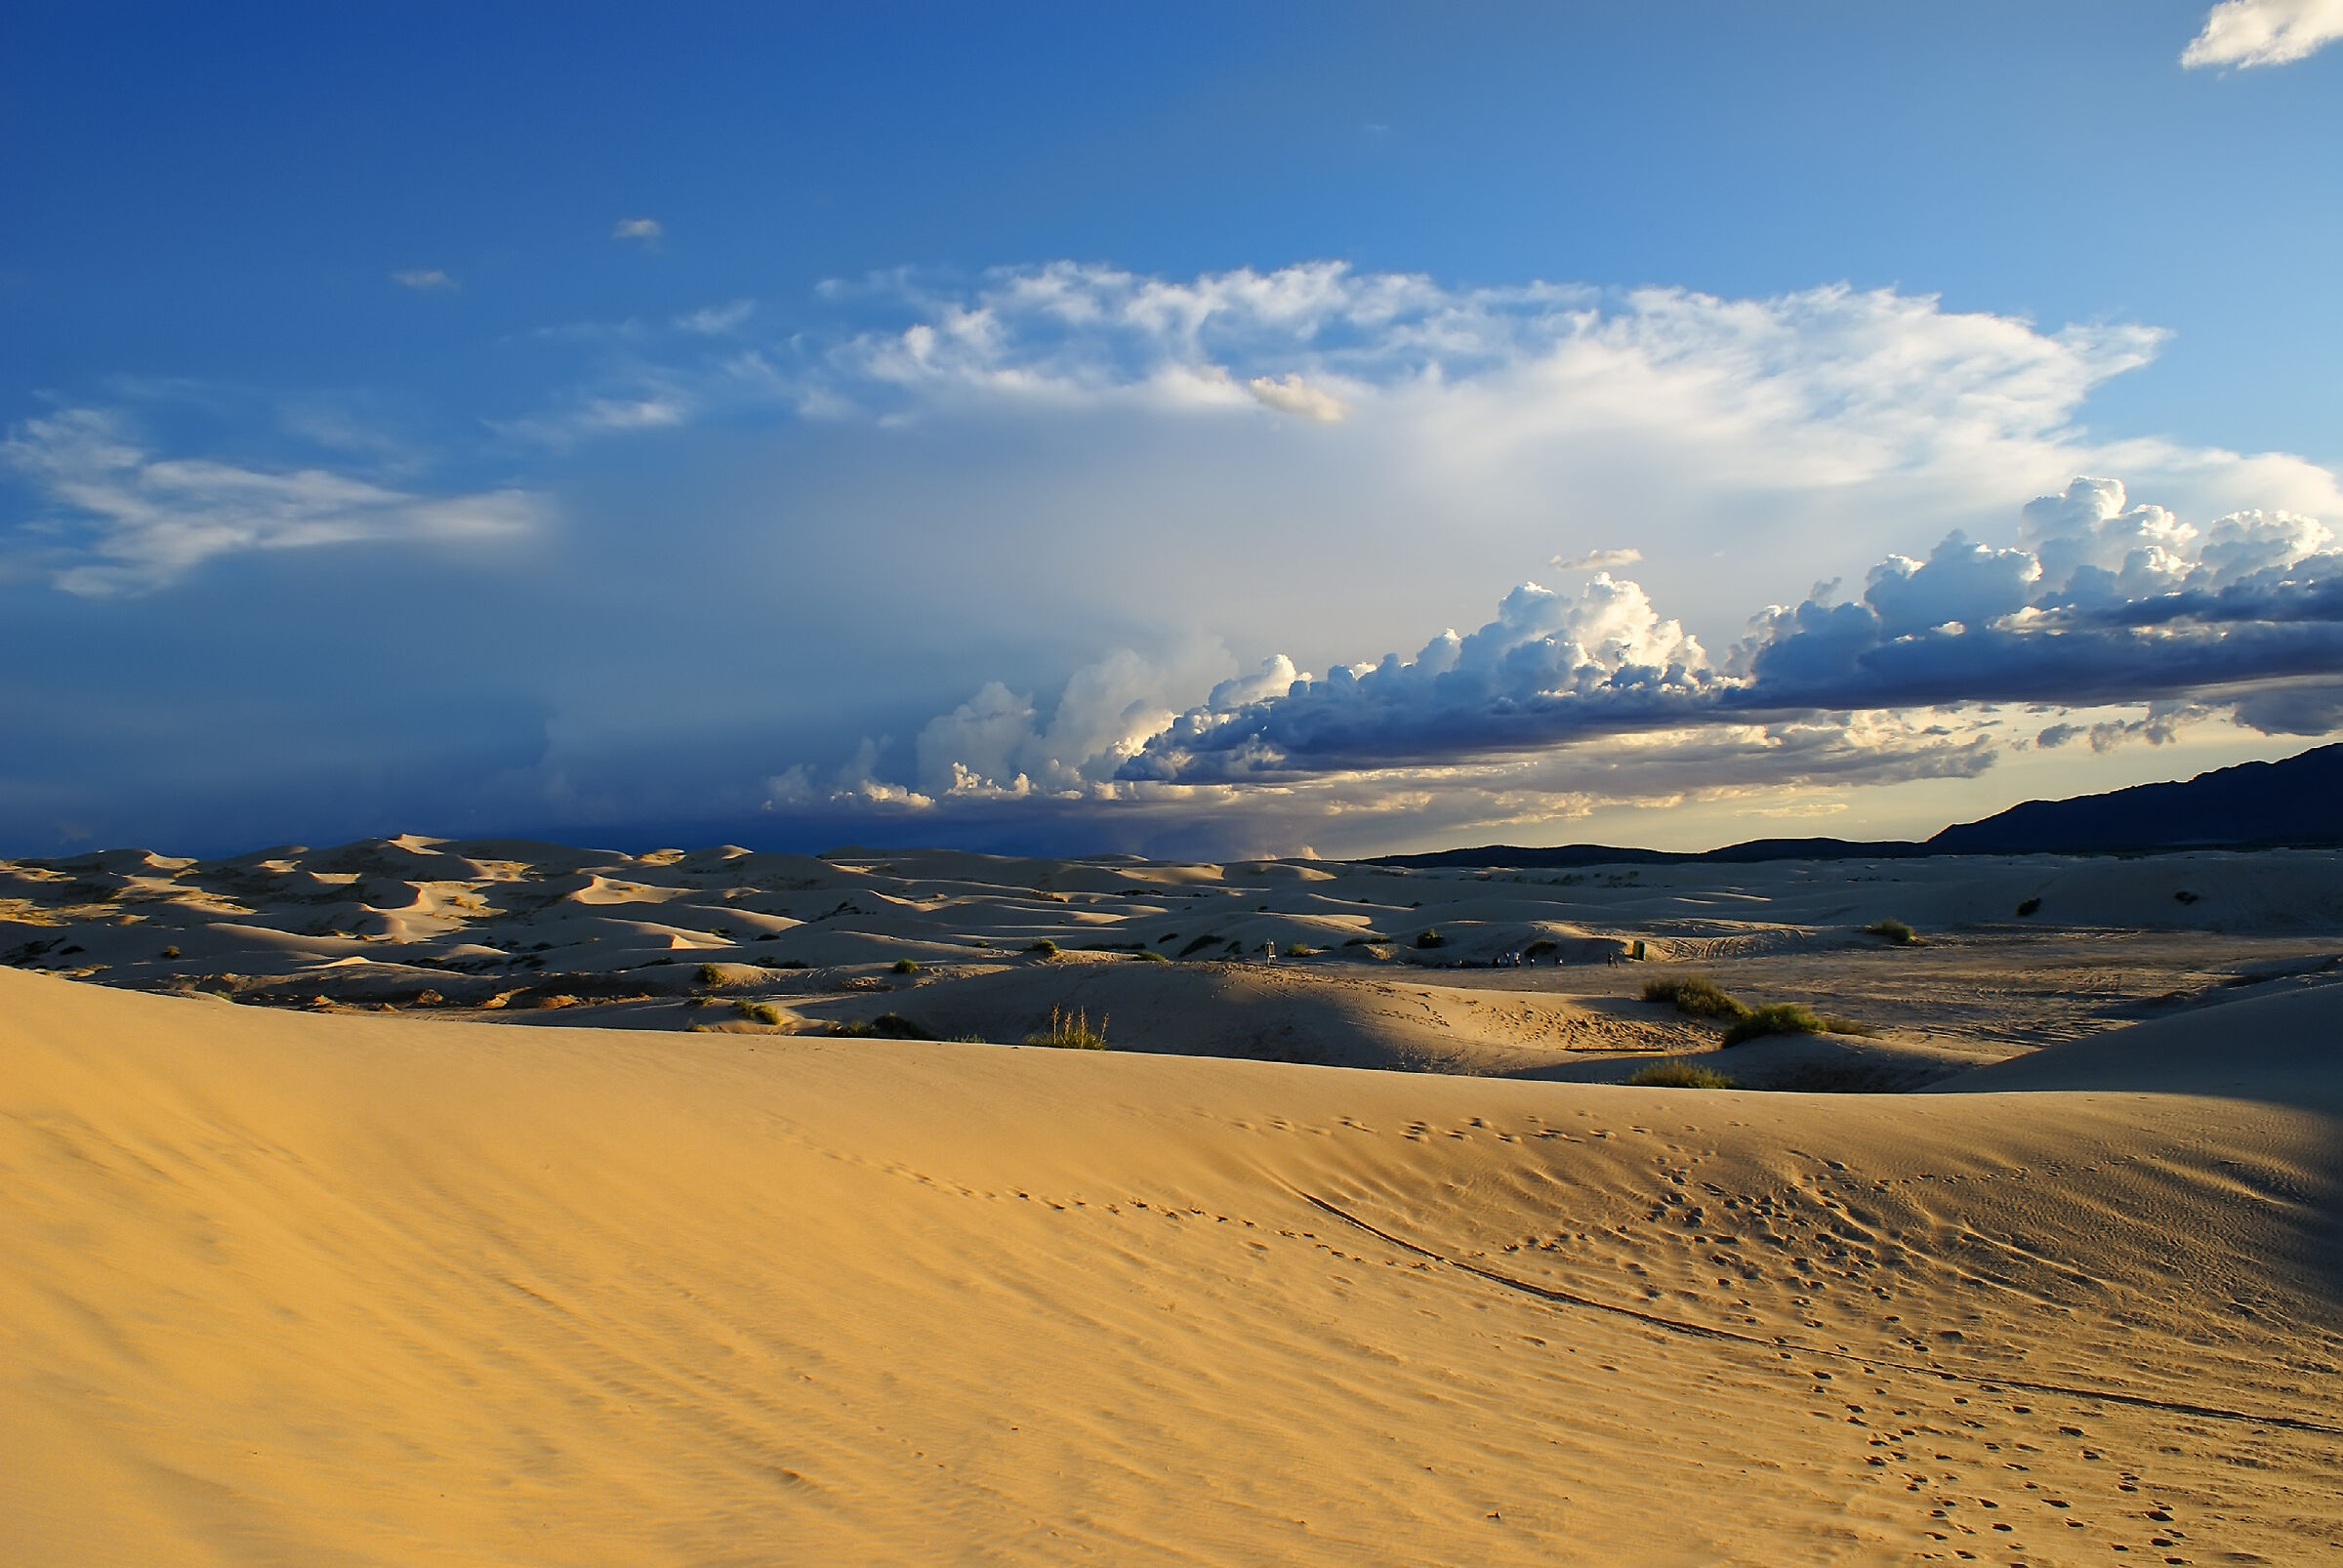 Dune nubi e cielo , messico Cjudad Juarez...